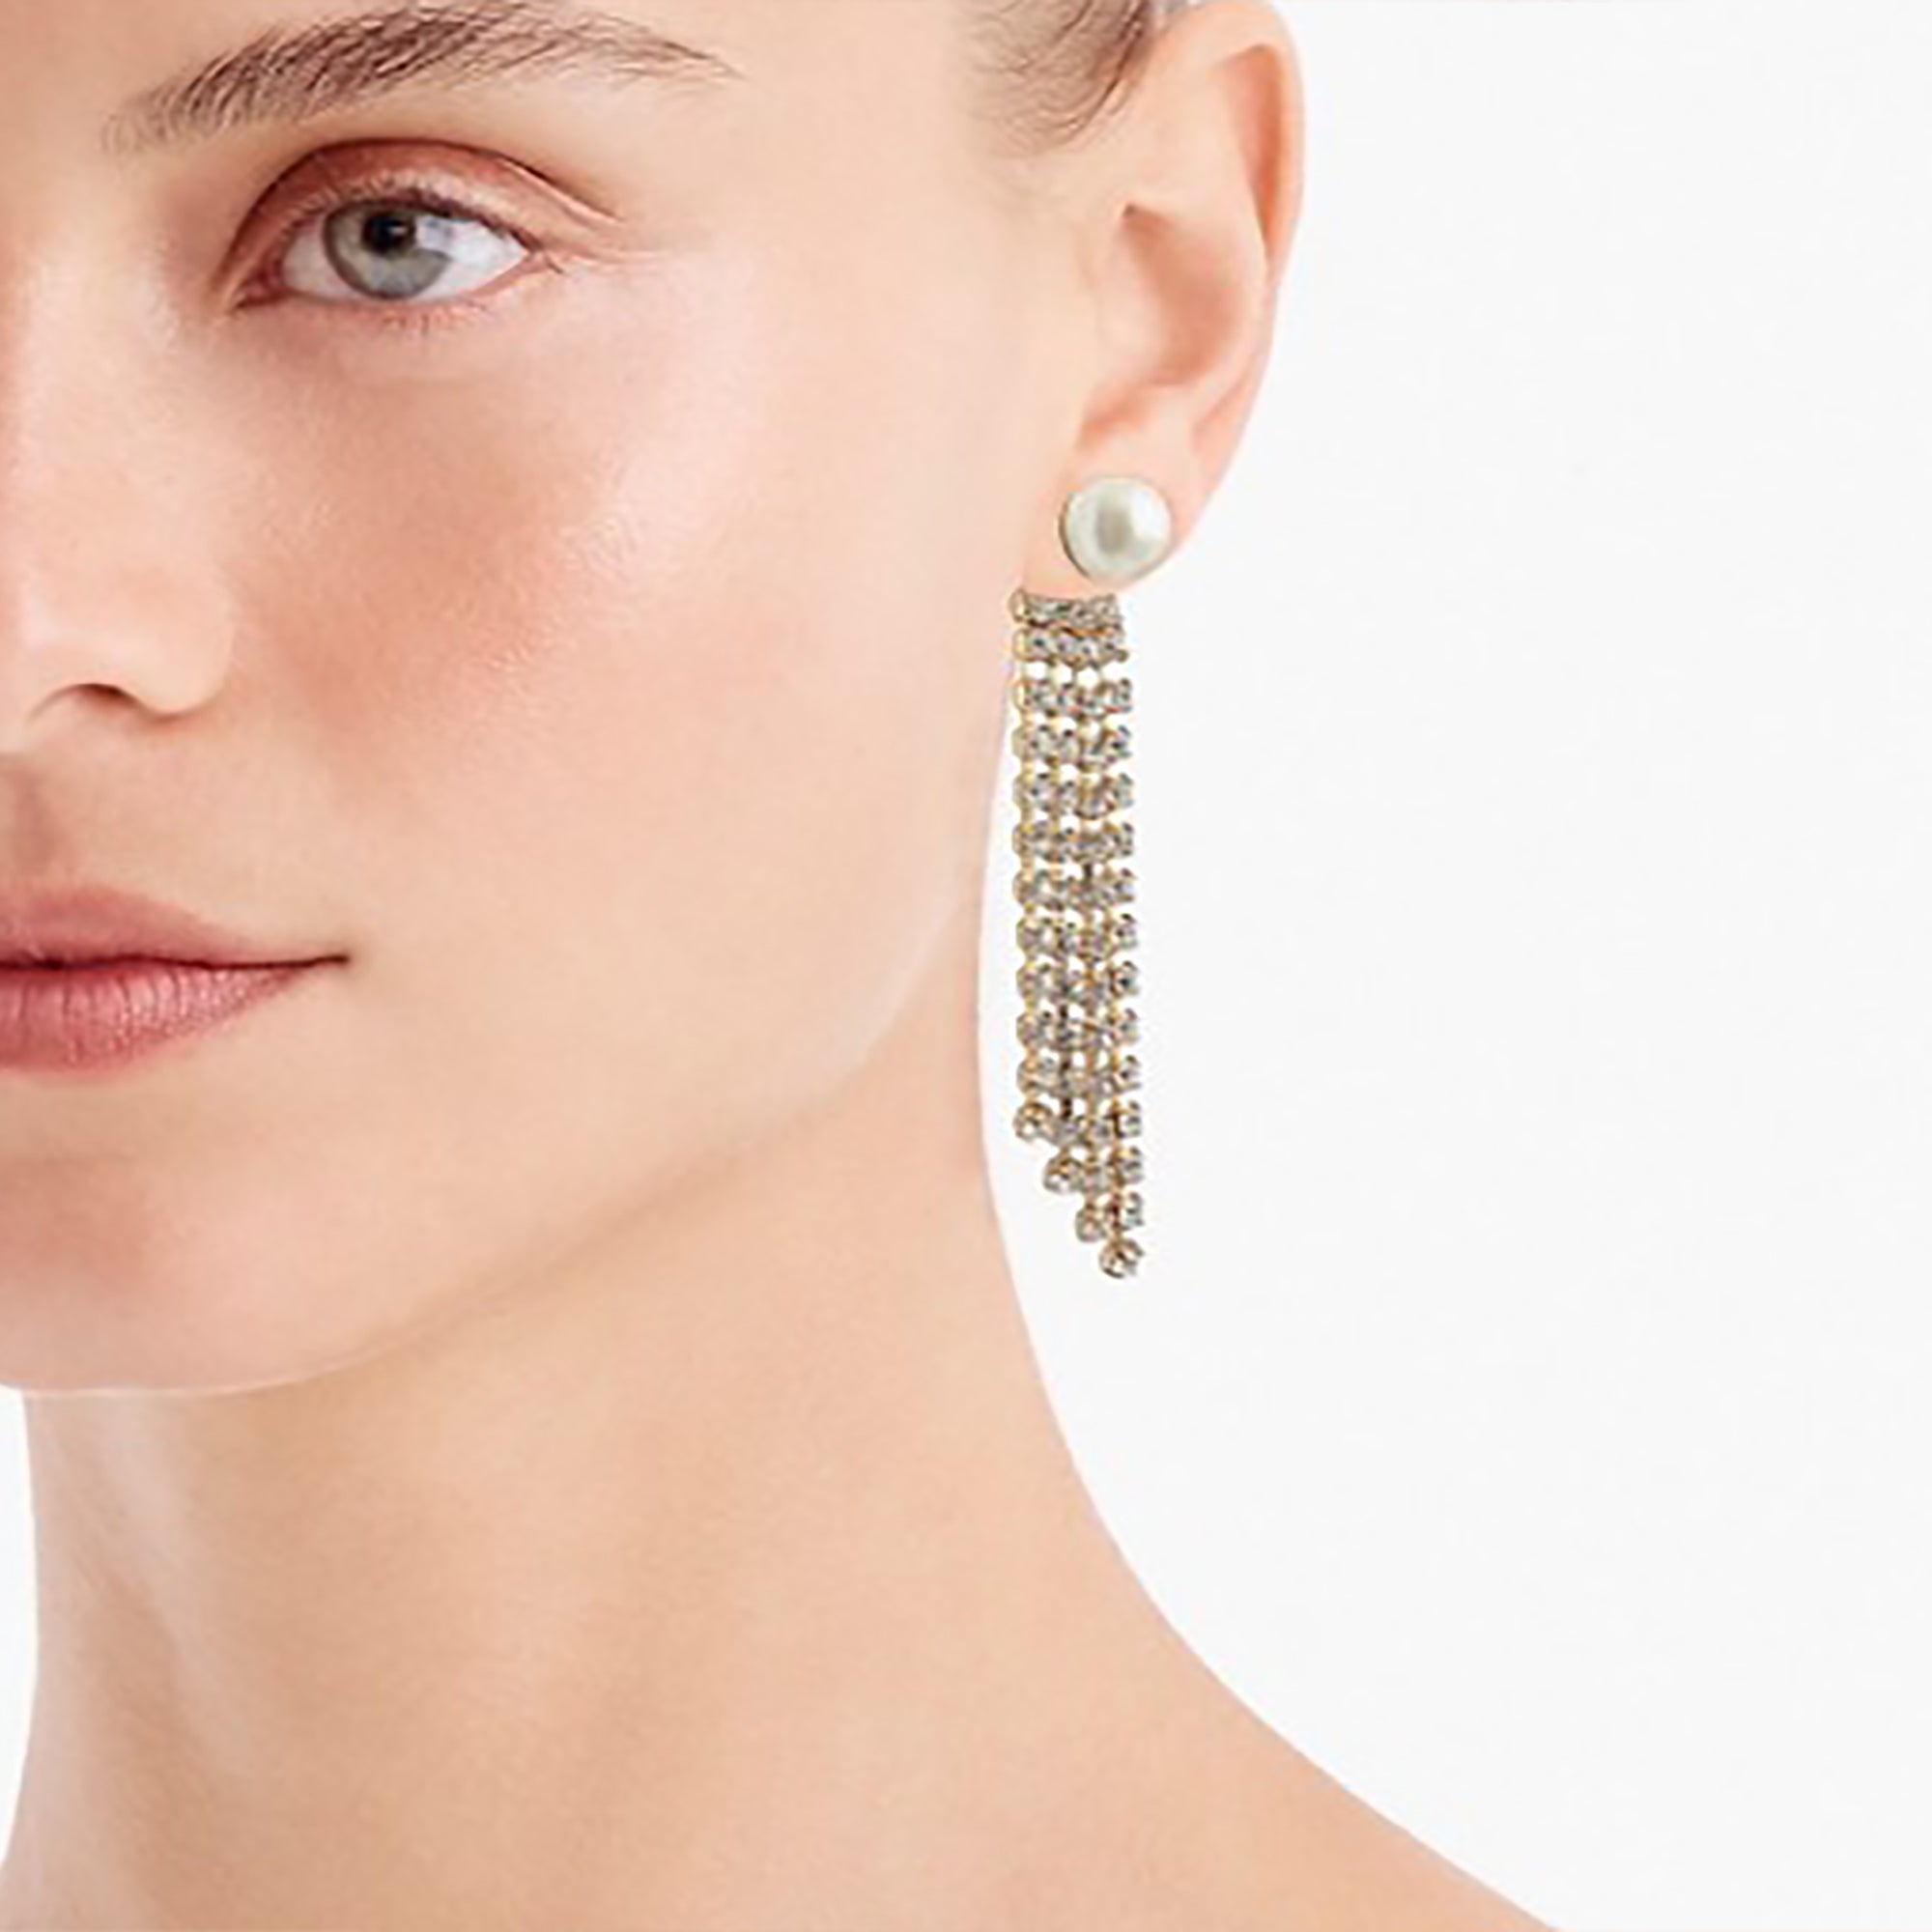 18K Gold Plated Pearl w/ CZ Tassels Double Side Earrings